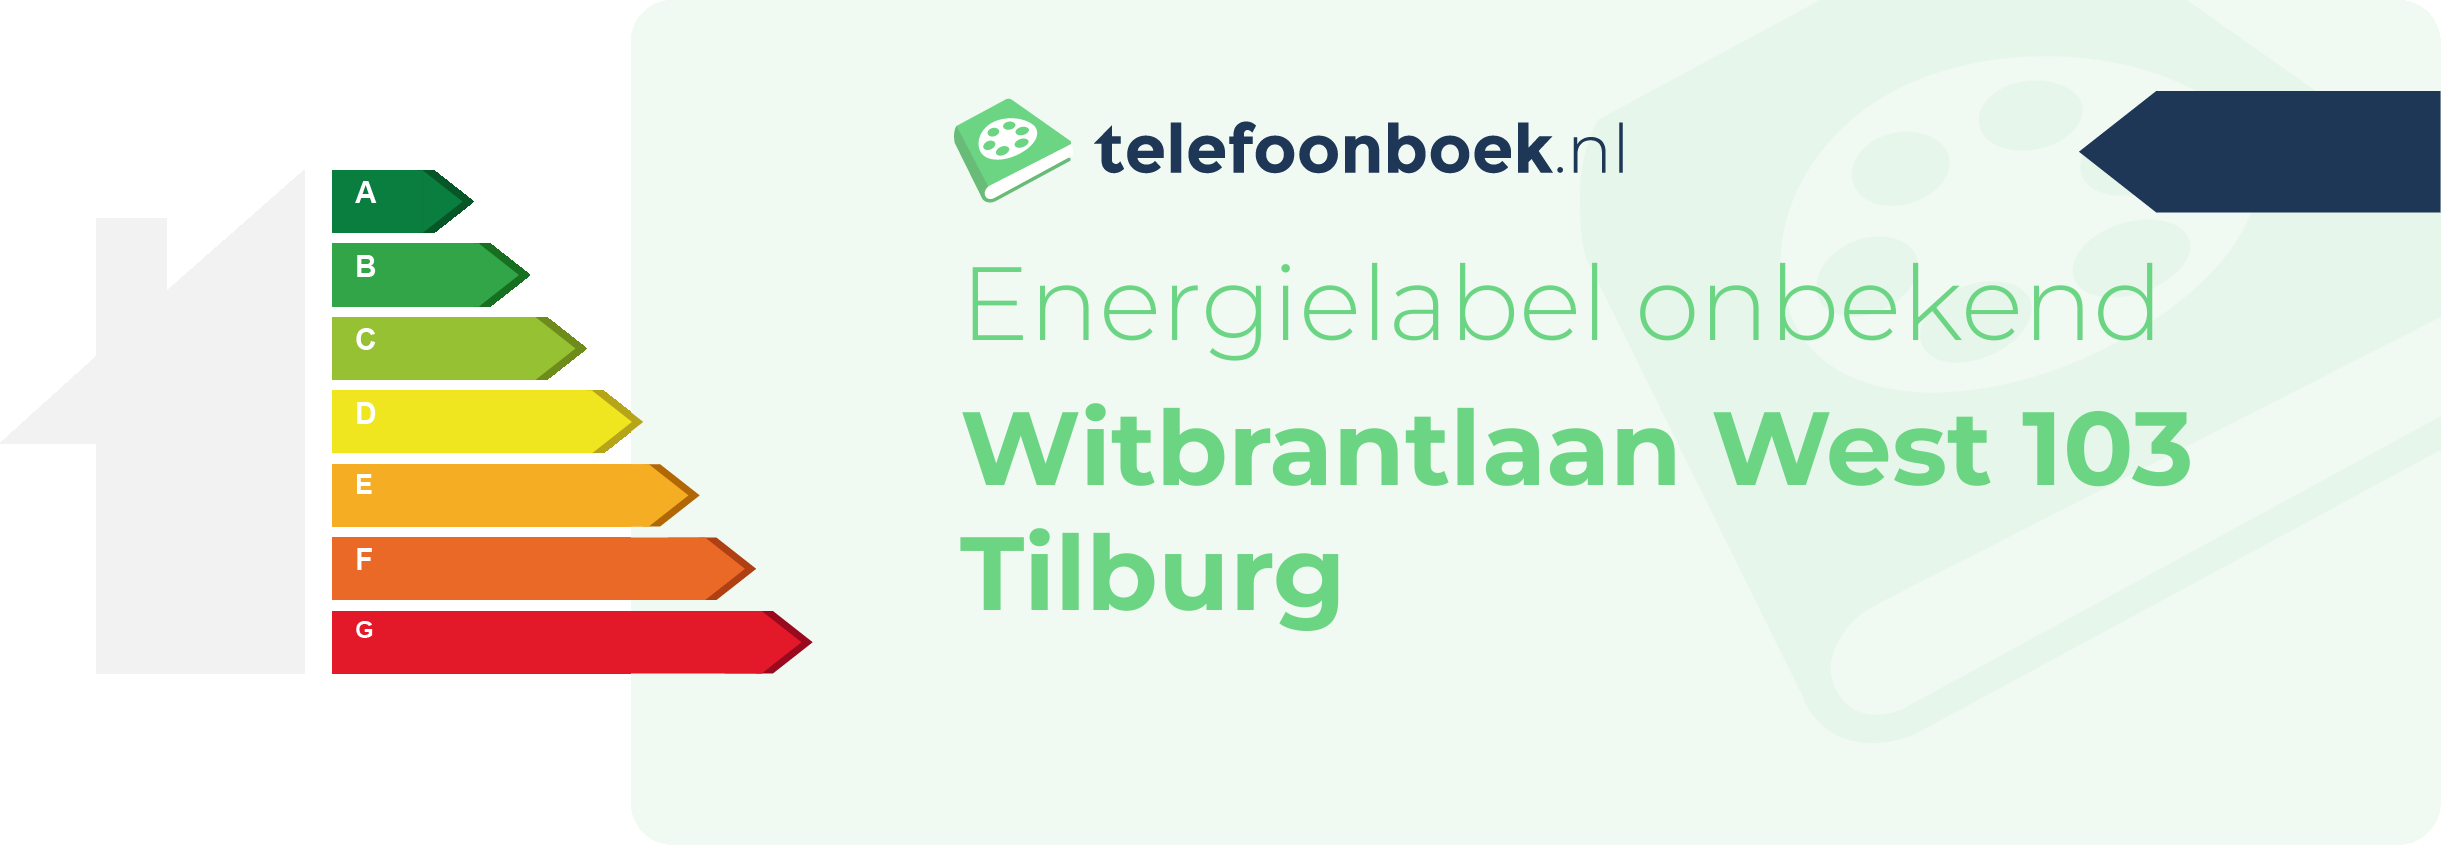 Energielabel Witbrantlaan West 103 Tilburg